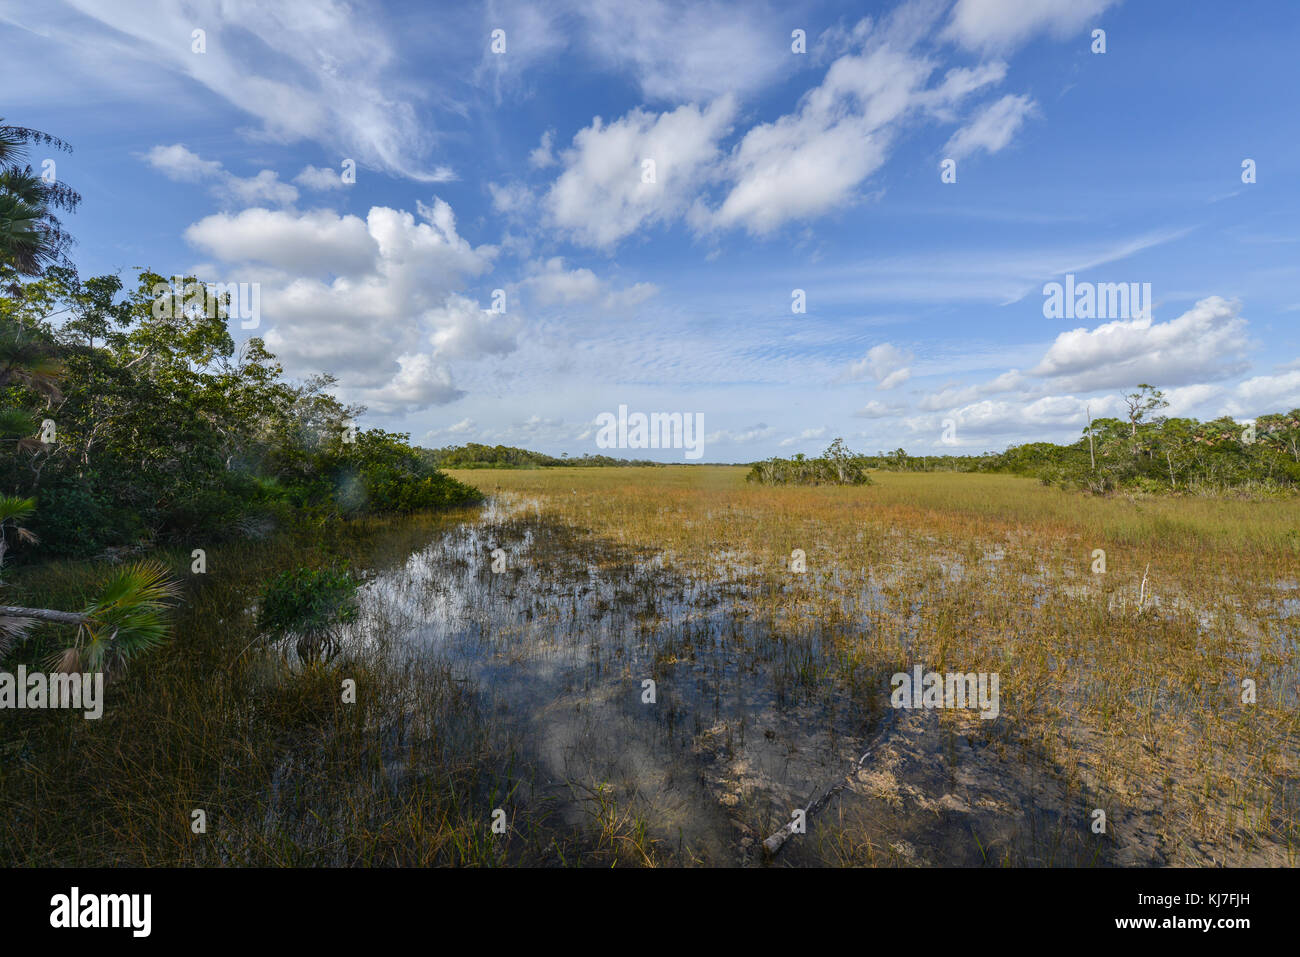 Paesaggio panoramico nella Florida Everglades National Park durante l'inverno. Il più grande deserto subtropicale negli stati uniti. Foto Stock